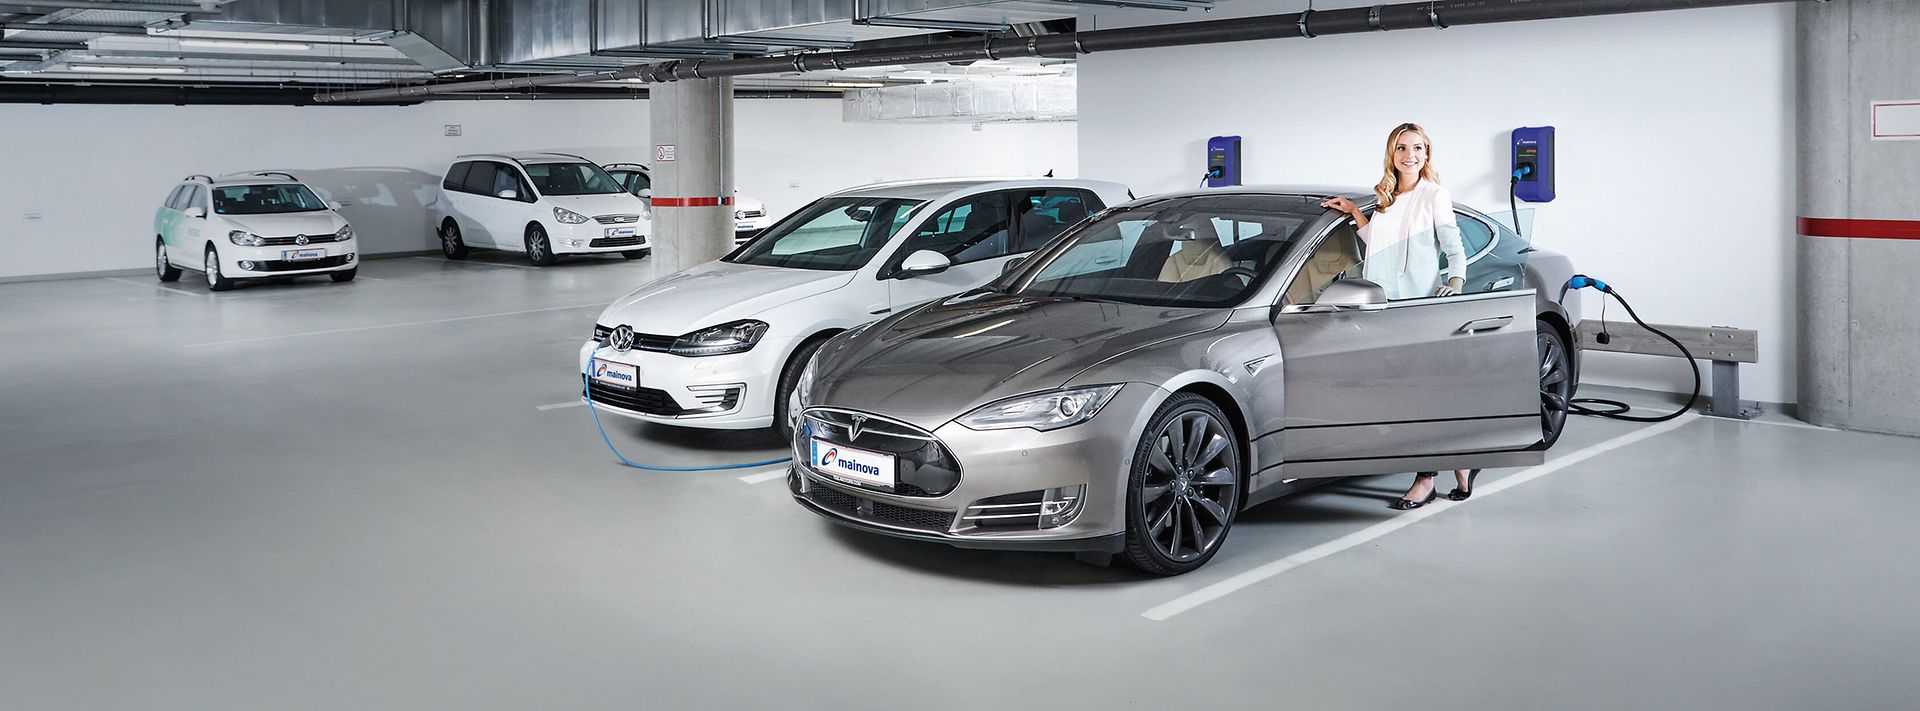 E-Auto laden – Elektromobilität für Unternehmen